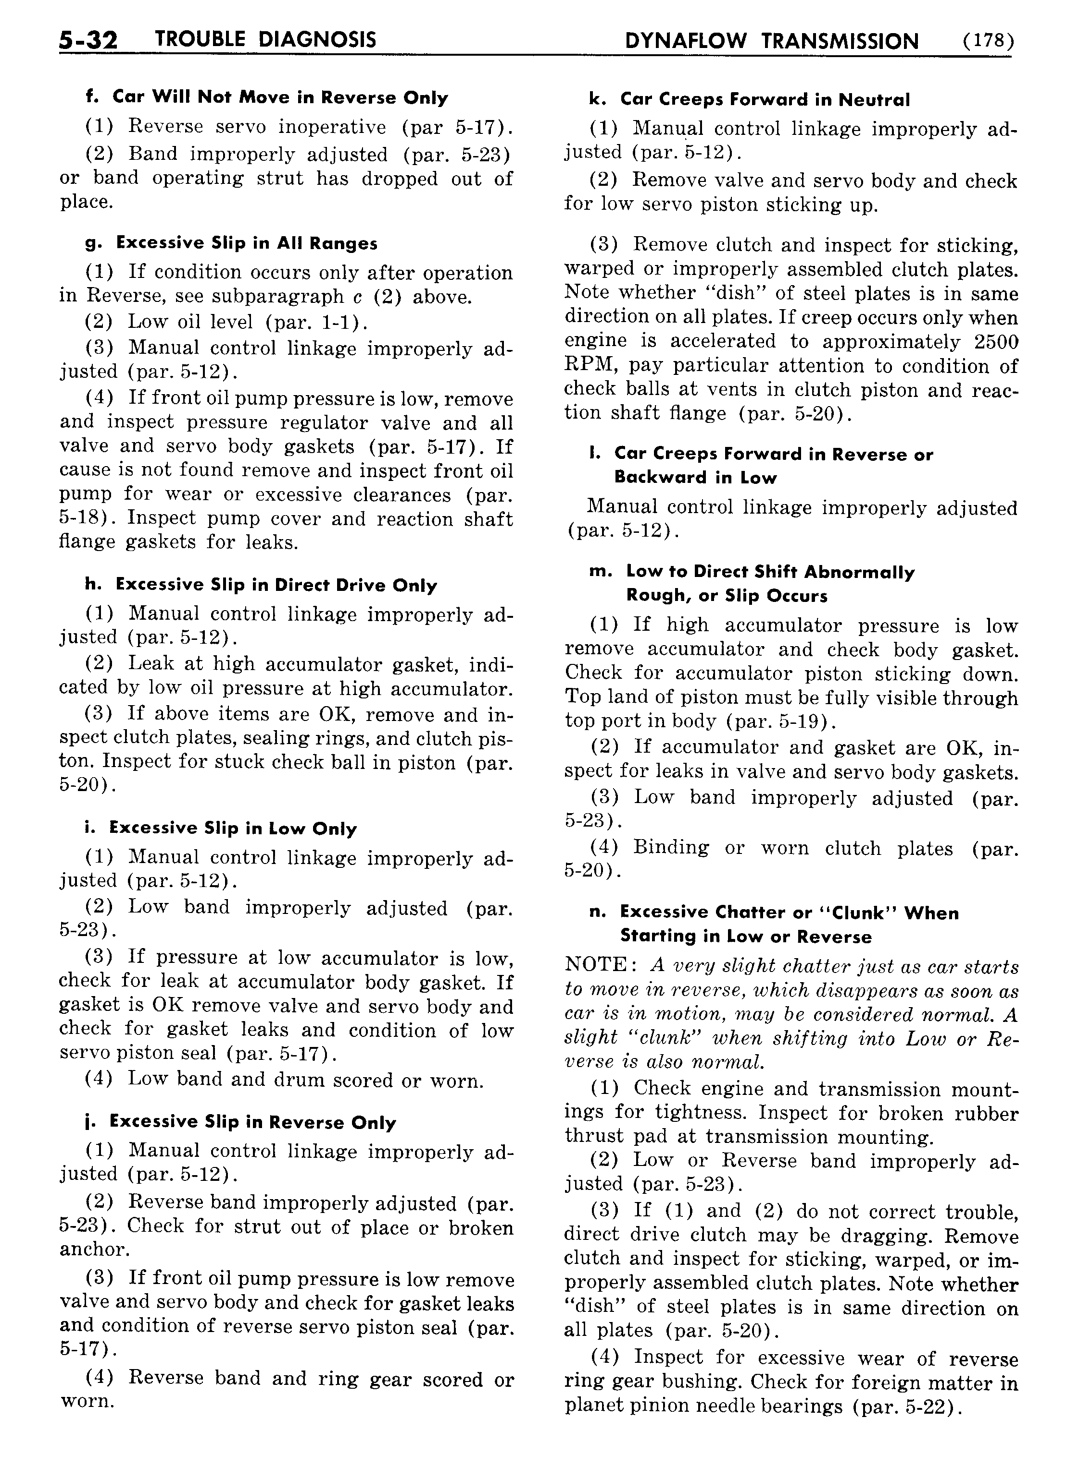 n_06 1956 Buick Shop Manual - Dynaflow-032-032.jpg